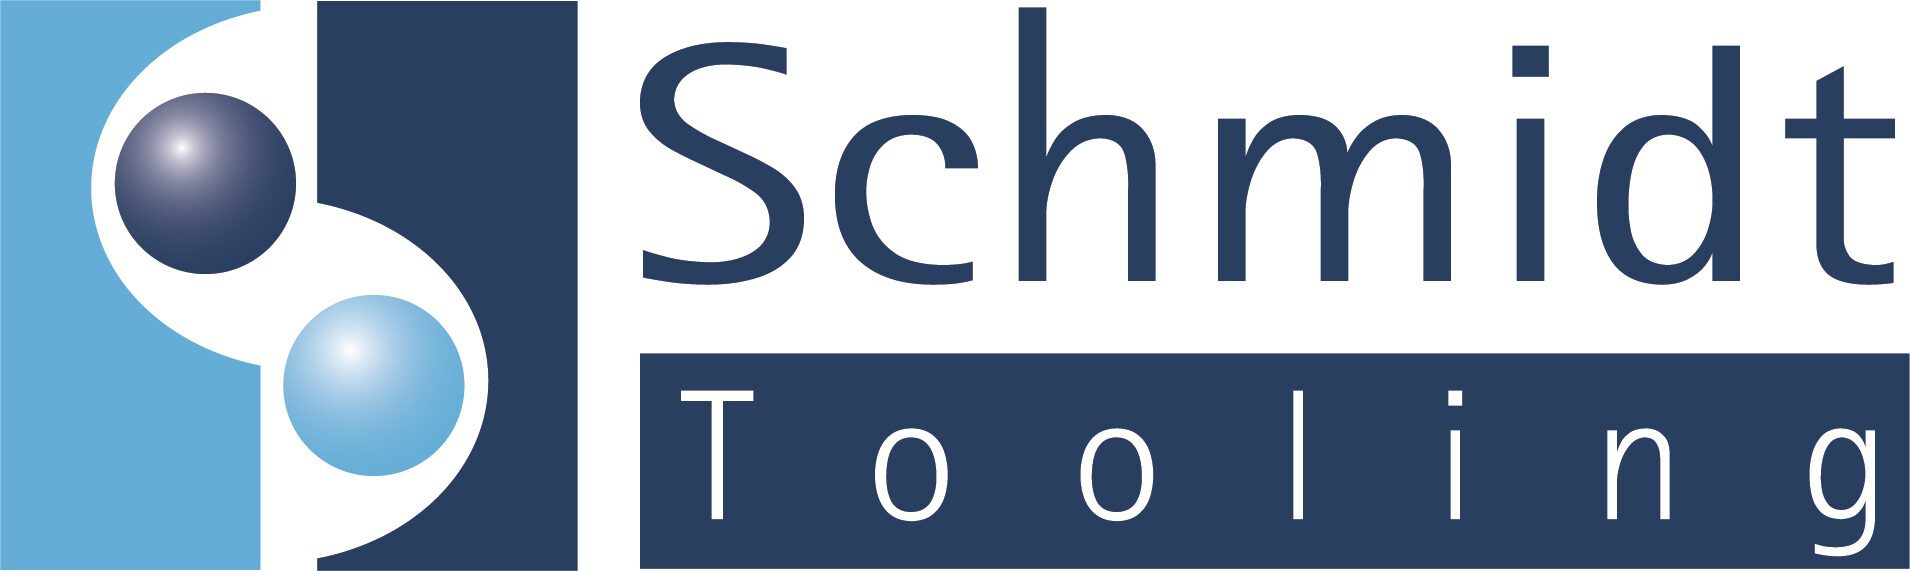 Schmidt Tooling GmbH